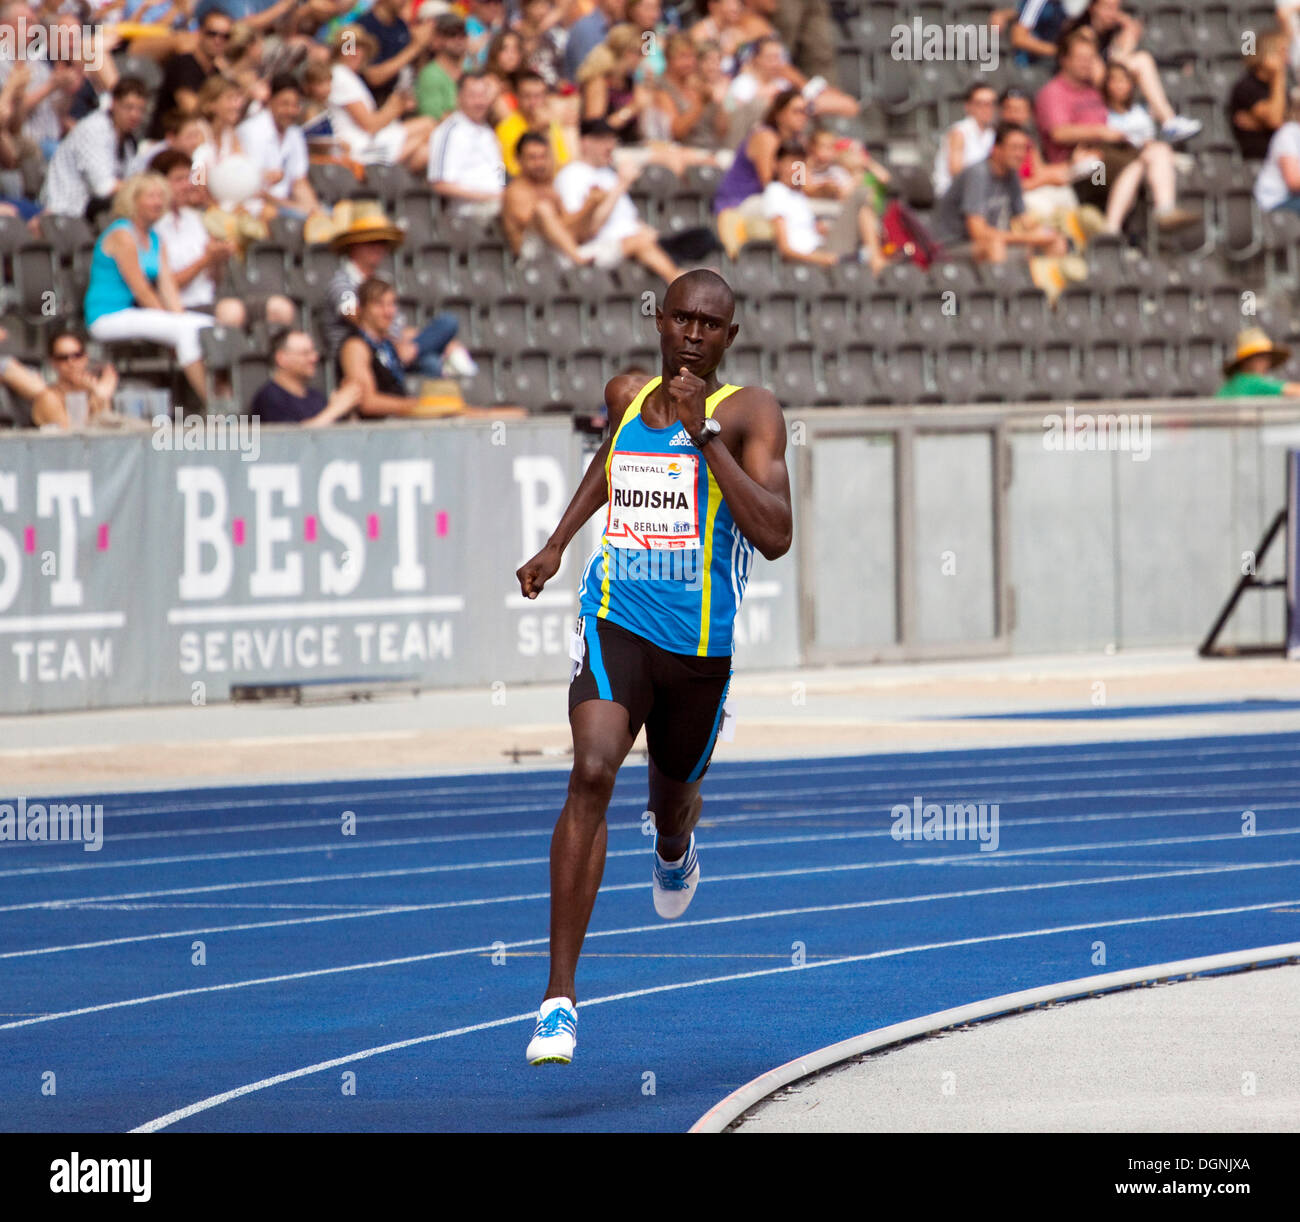 L'athlète Kenyan, David Lekuta Rudisha, exécutant ses 800 mètres record du monde pendant l'ISTAF 2010 Stadionfest International, Banque D'Images